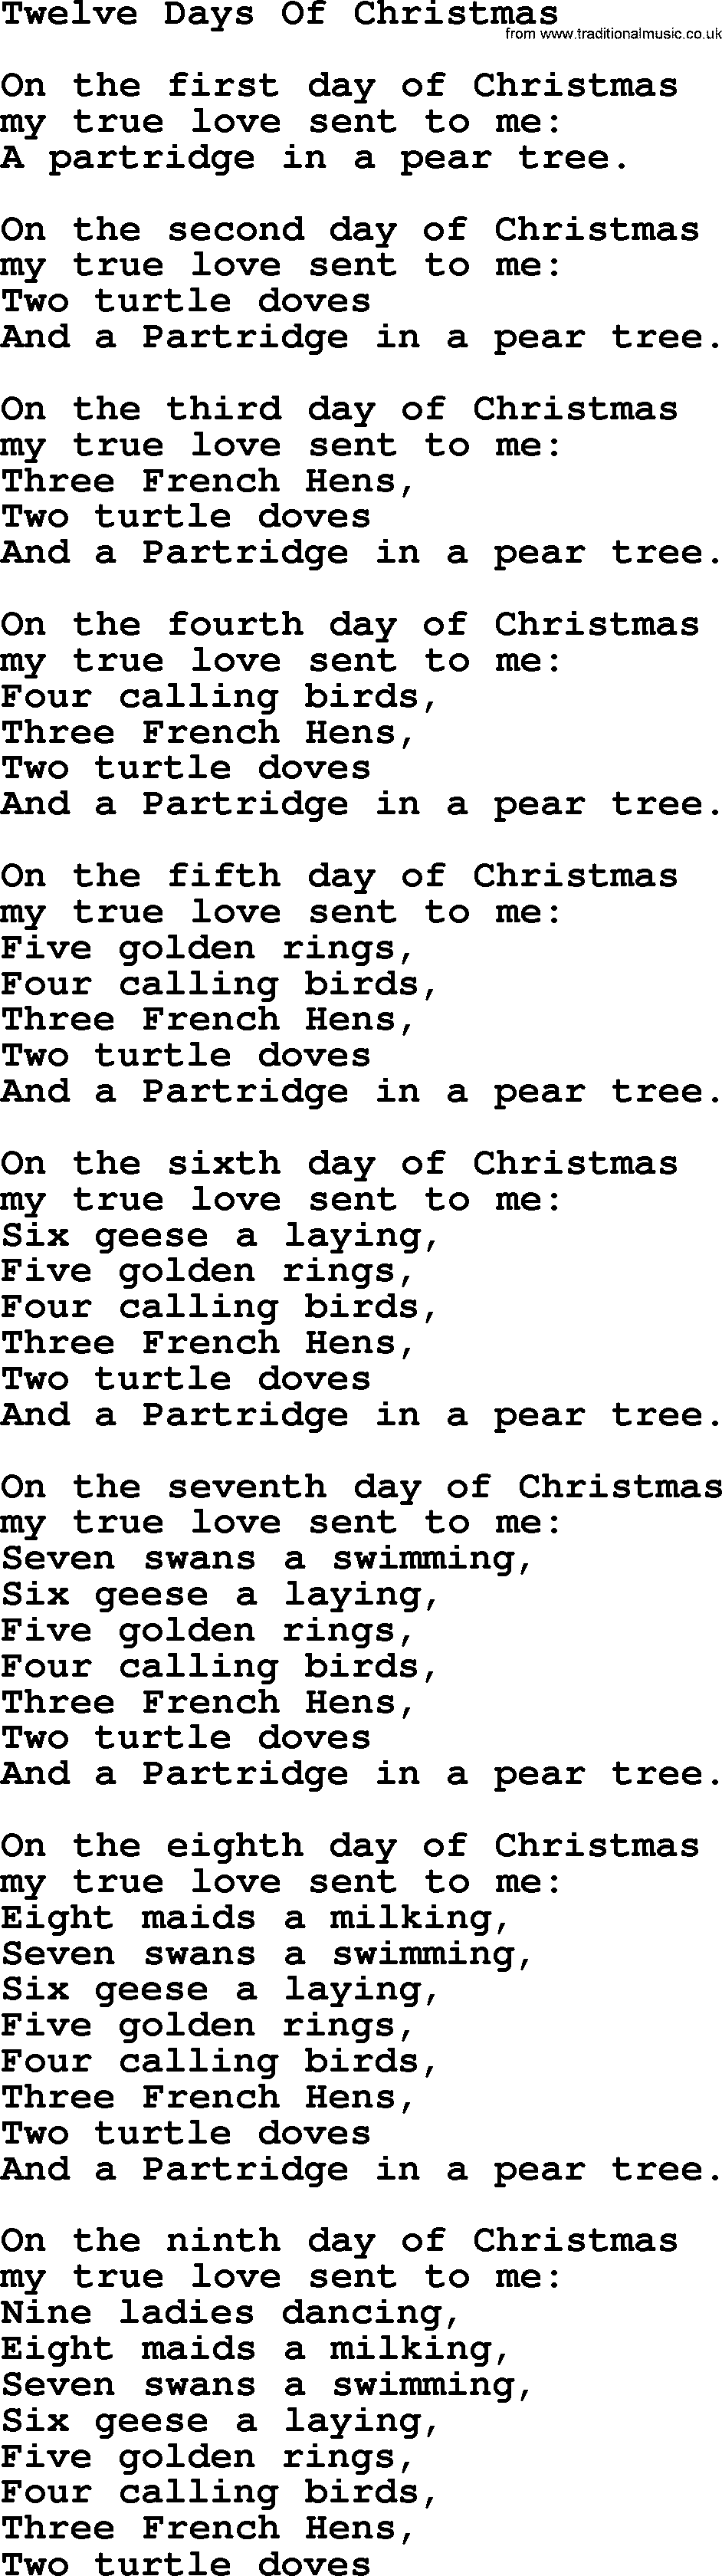 Printable Lyrics For 12 Days Of Christmas